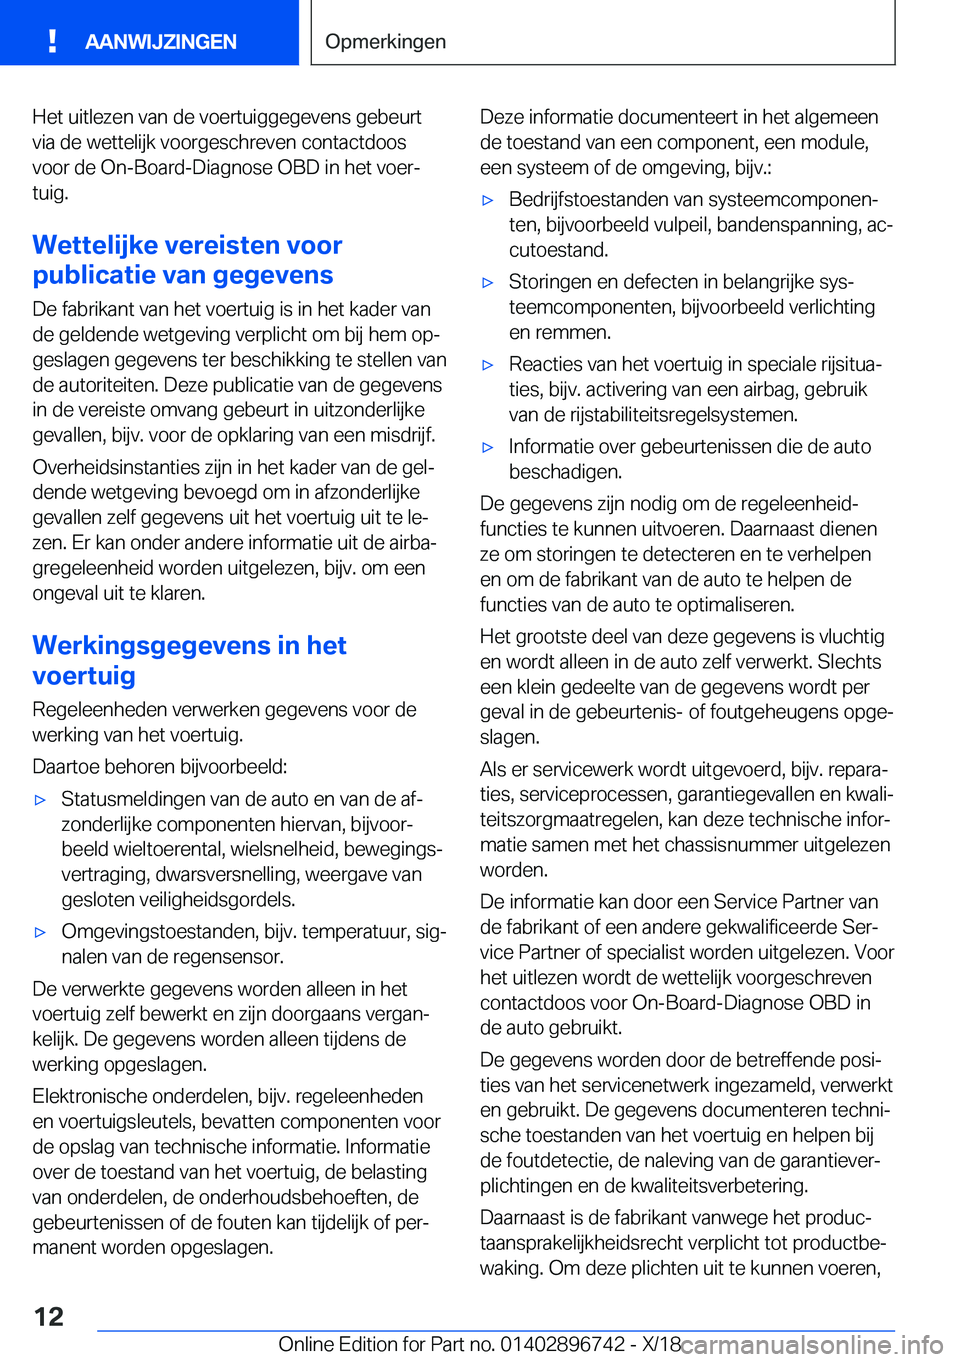 BMW X5 2019  Instructieboekjes (in Dutch) �H�e�t��u�i�t�l�e�z�e�n��v�a�n��d�e��v�o�e�r�t�u�i�g�g�e�g�e�v�e�n�s��g�e�b�e�u�r�t�v�i�a��d�e��w�e�t�t�e�l�i�j�k��v�o�o�r�g�e�s�c�h�r�e�v�e�n��c�o�n�t�a�c�t�d�o�o�s
�v�o�o�r��d�e��O�n�-�B�